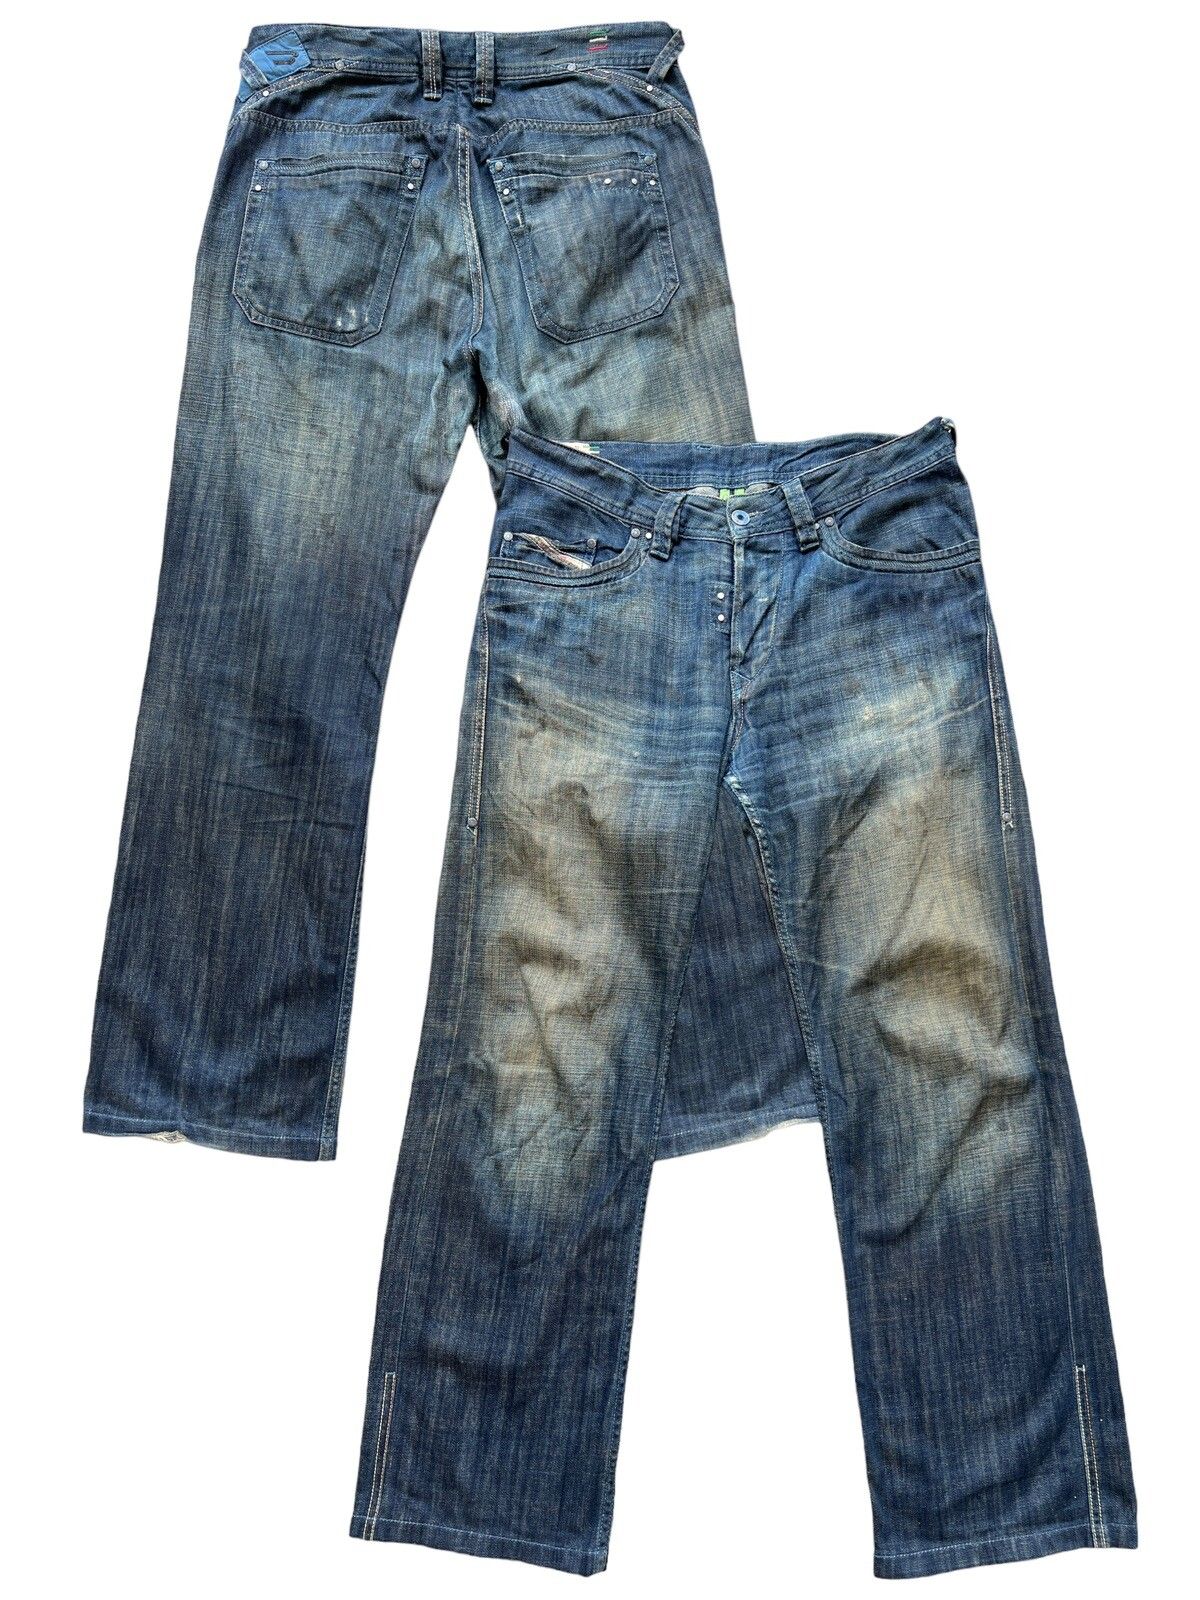 Vintage Diesel Industry Distressed Denim Jeans 34x30 - 1